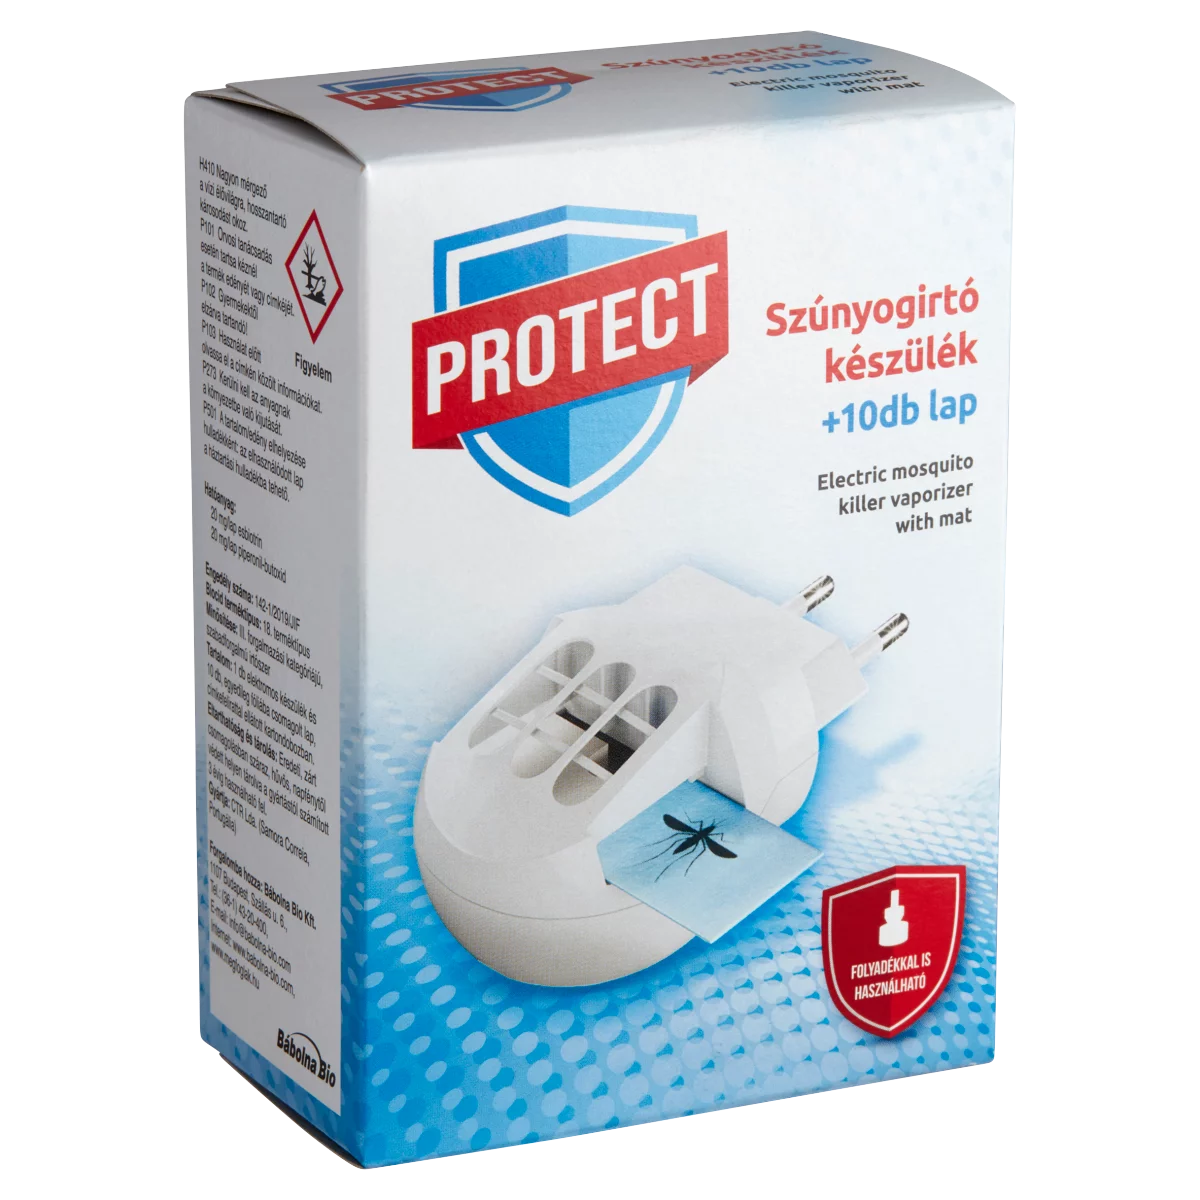 Protect Plus szúnyogirtó készülék + 10 db lap